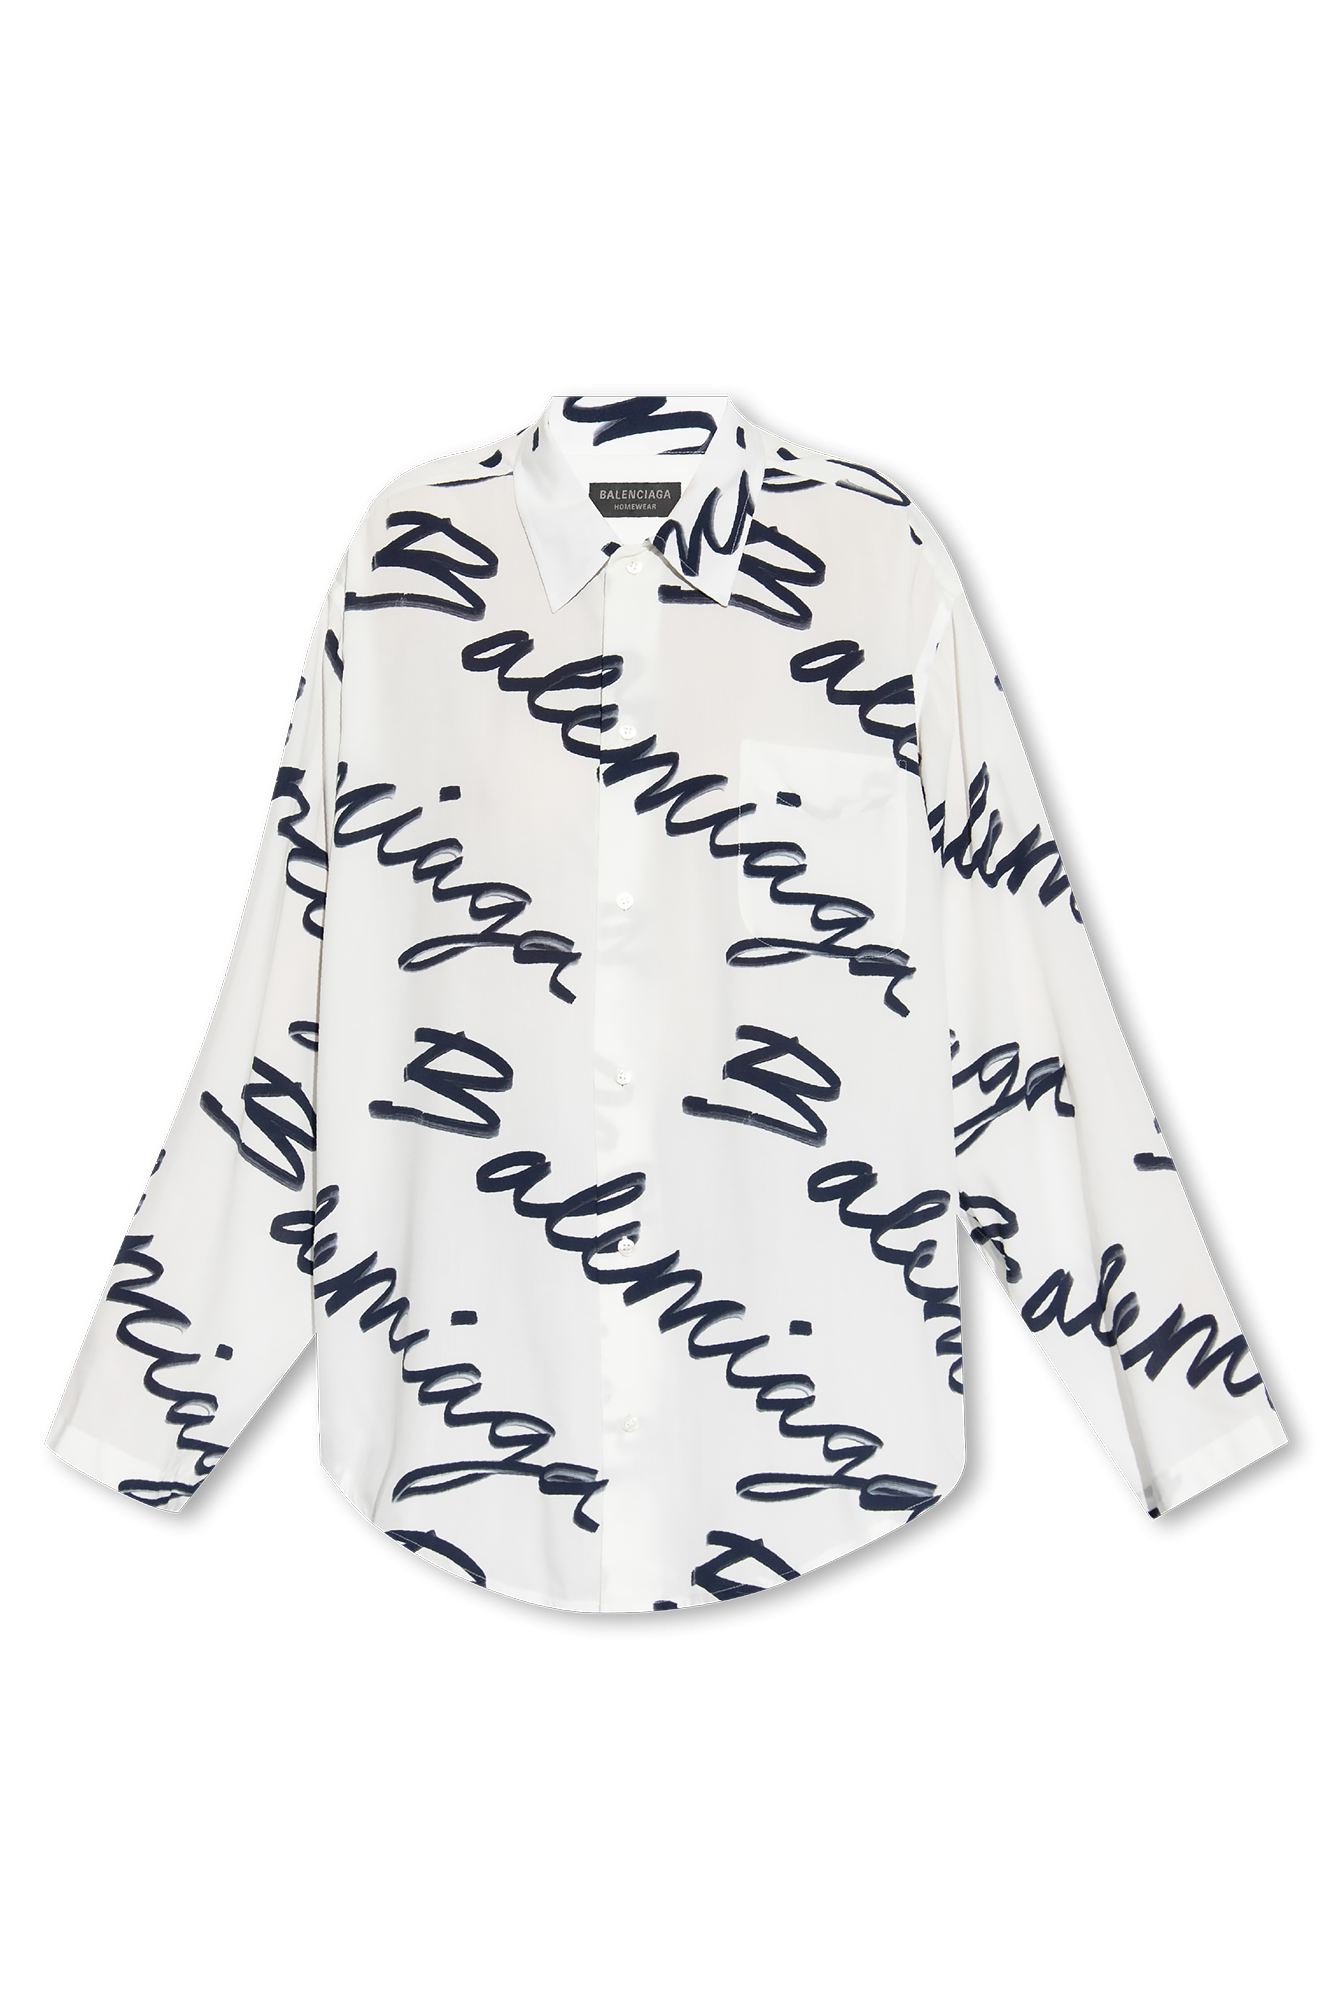 Balenciaga Monogram Shirt Mens Fashion Tops  Sets Tshirts  Polo  Shirts on Carousell